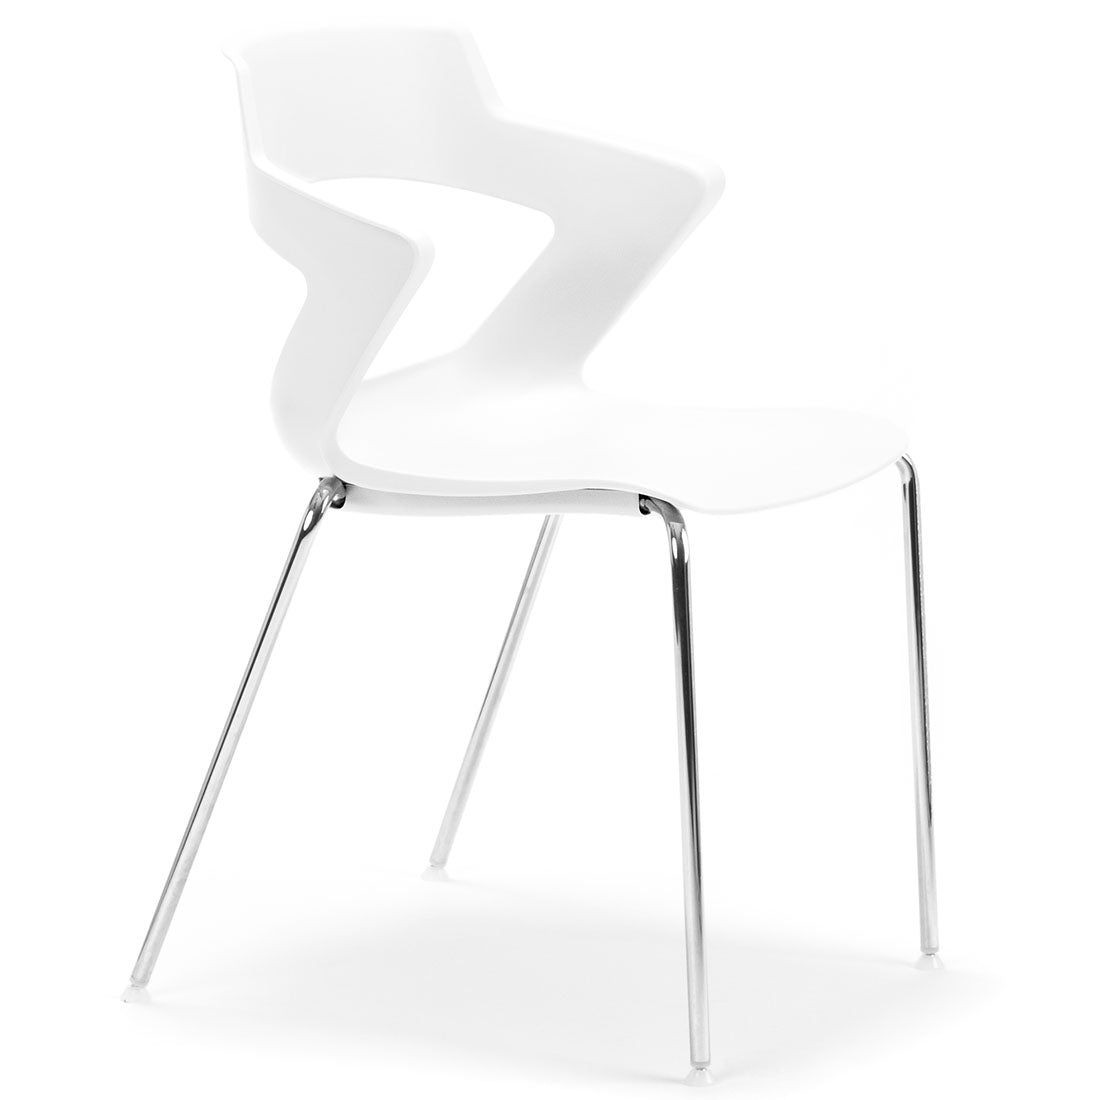 Zen Cafe Chair - switchoffice.com.au